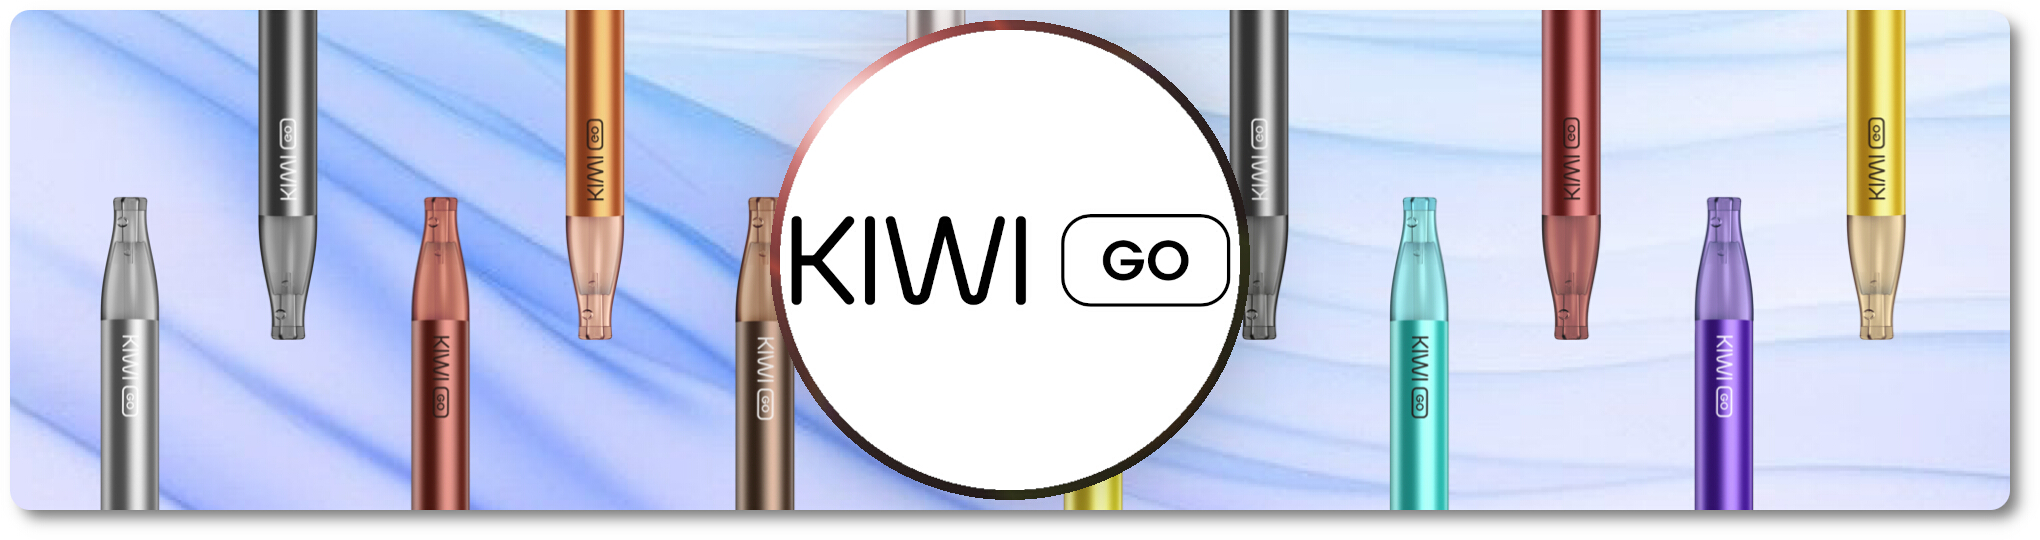 Kiwi Go